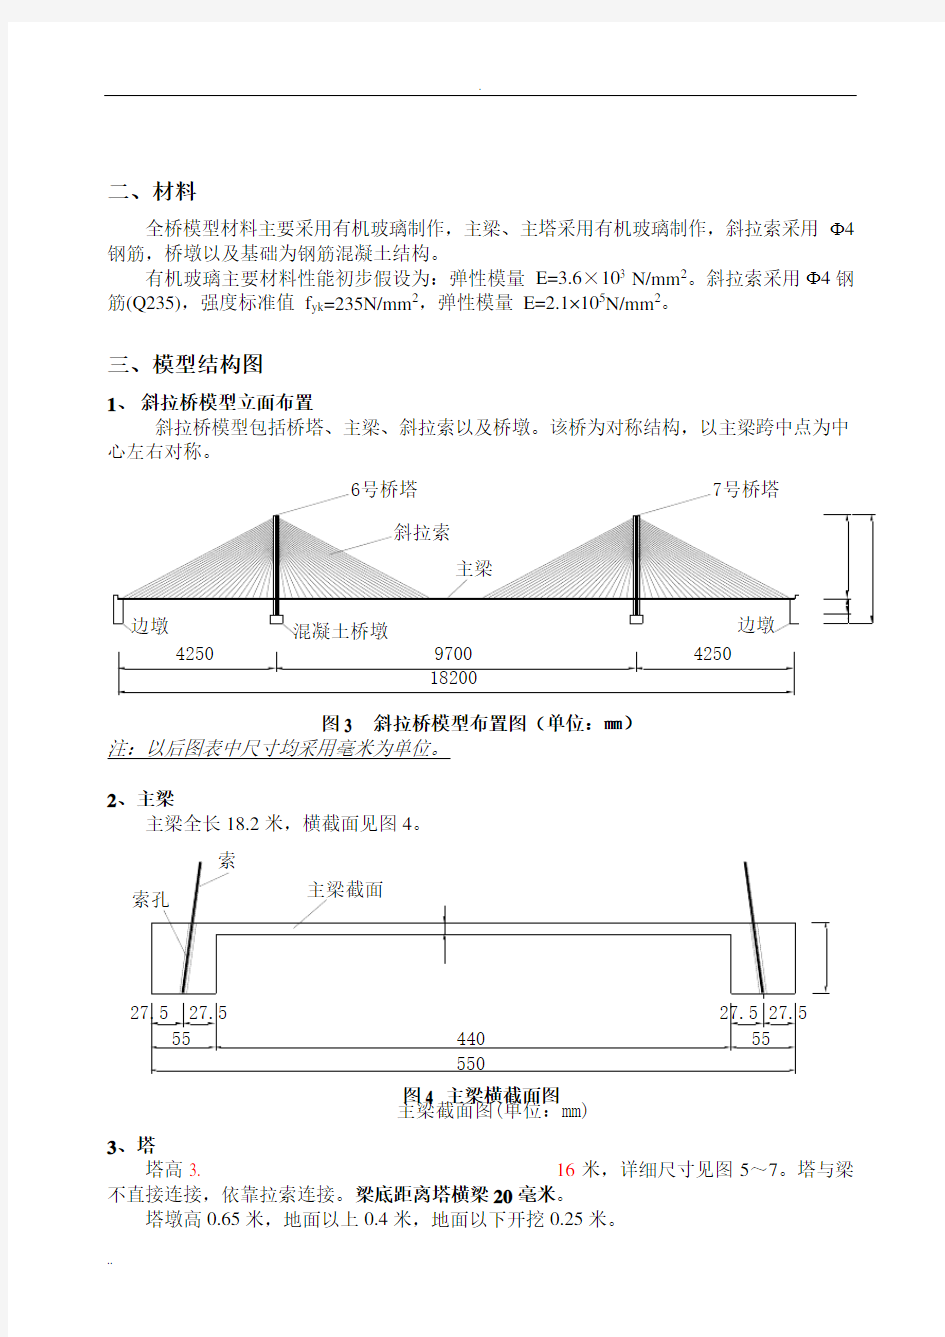 斜拉桥模型制作设计图